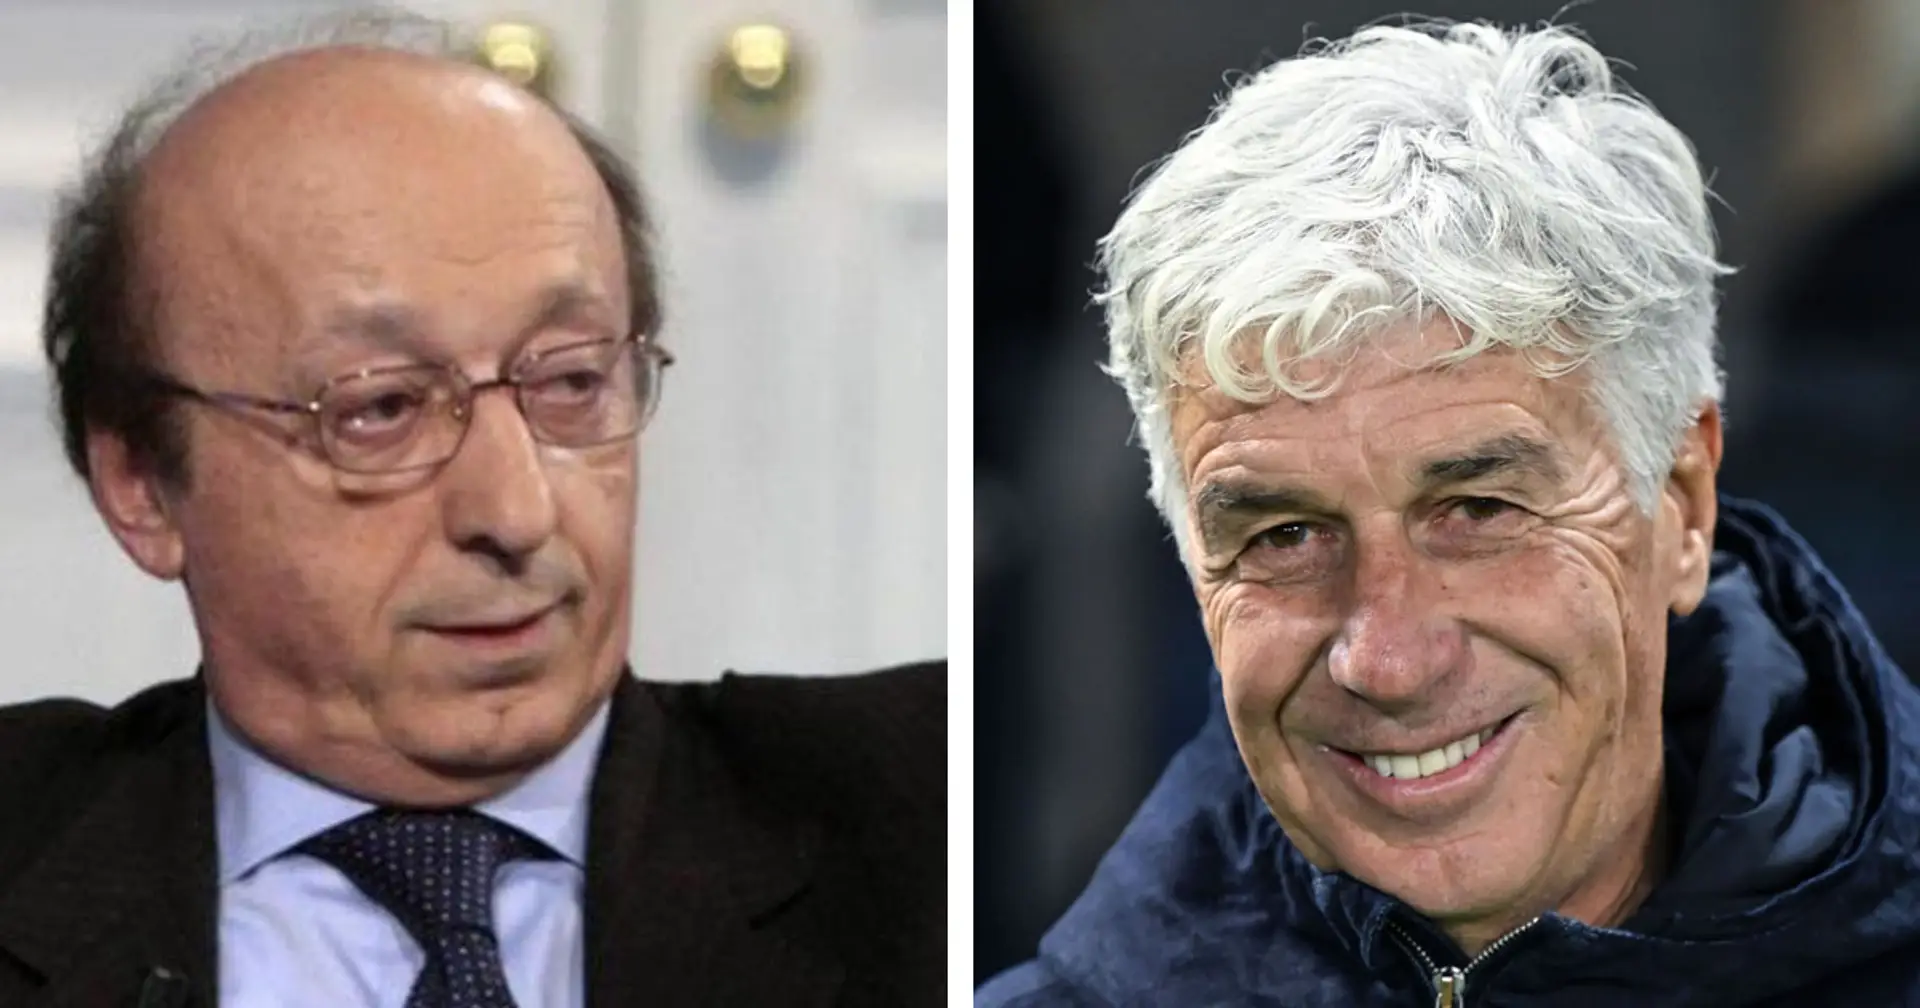 L'ex DG della Juventus non ha dubbi: "Gasperini sarebbe l'uomo perfetto", poi spiega i 2 motivi